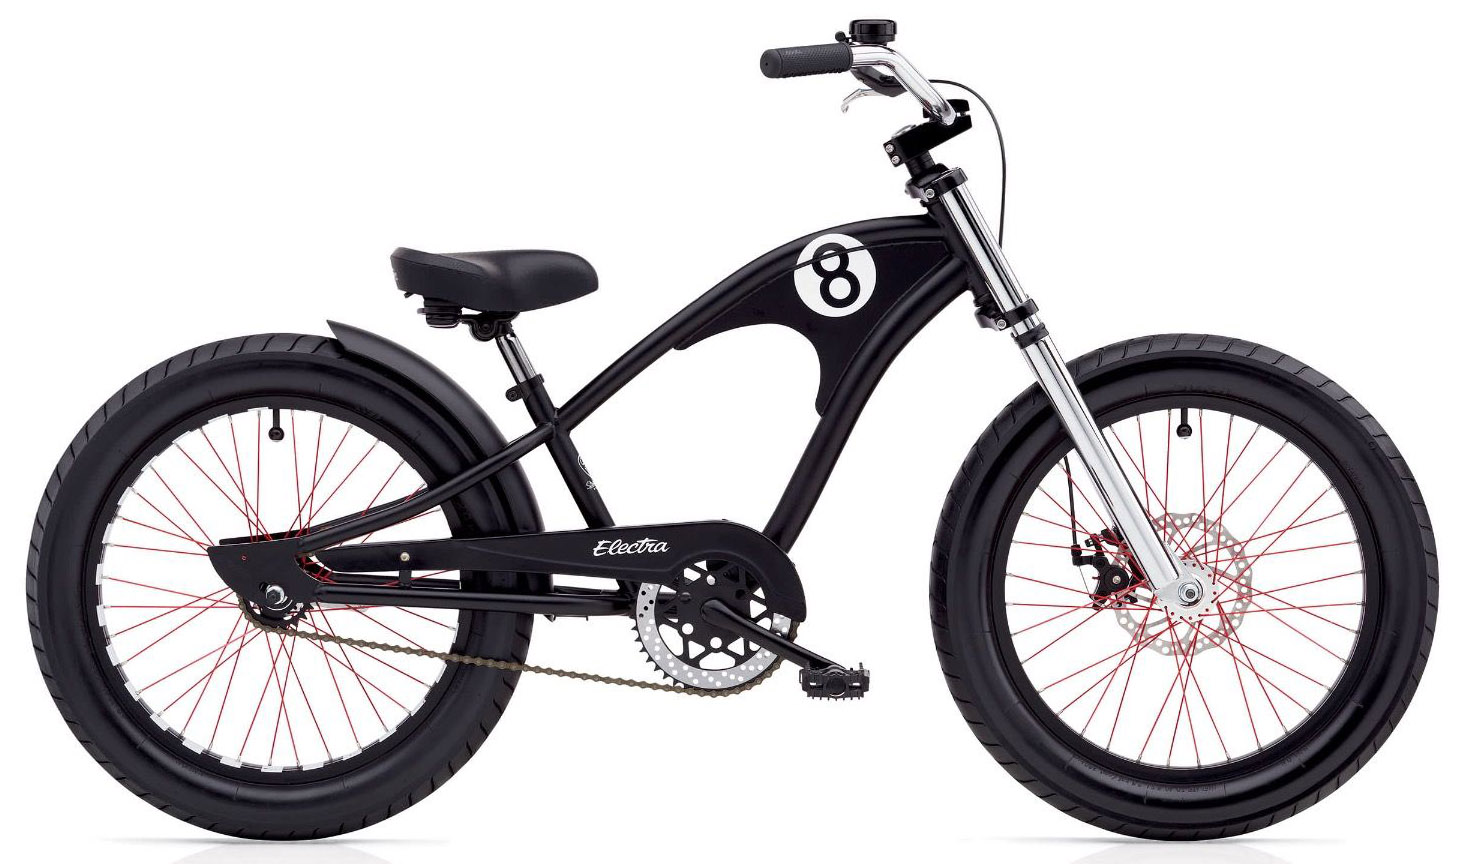  Отзывы о Детском велосипеде Electra Straight 8 3i 20 2020